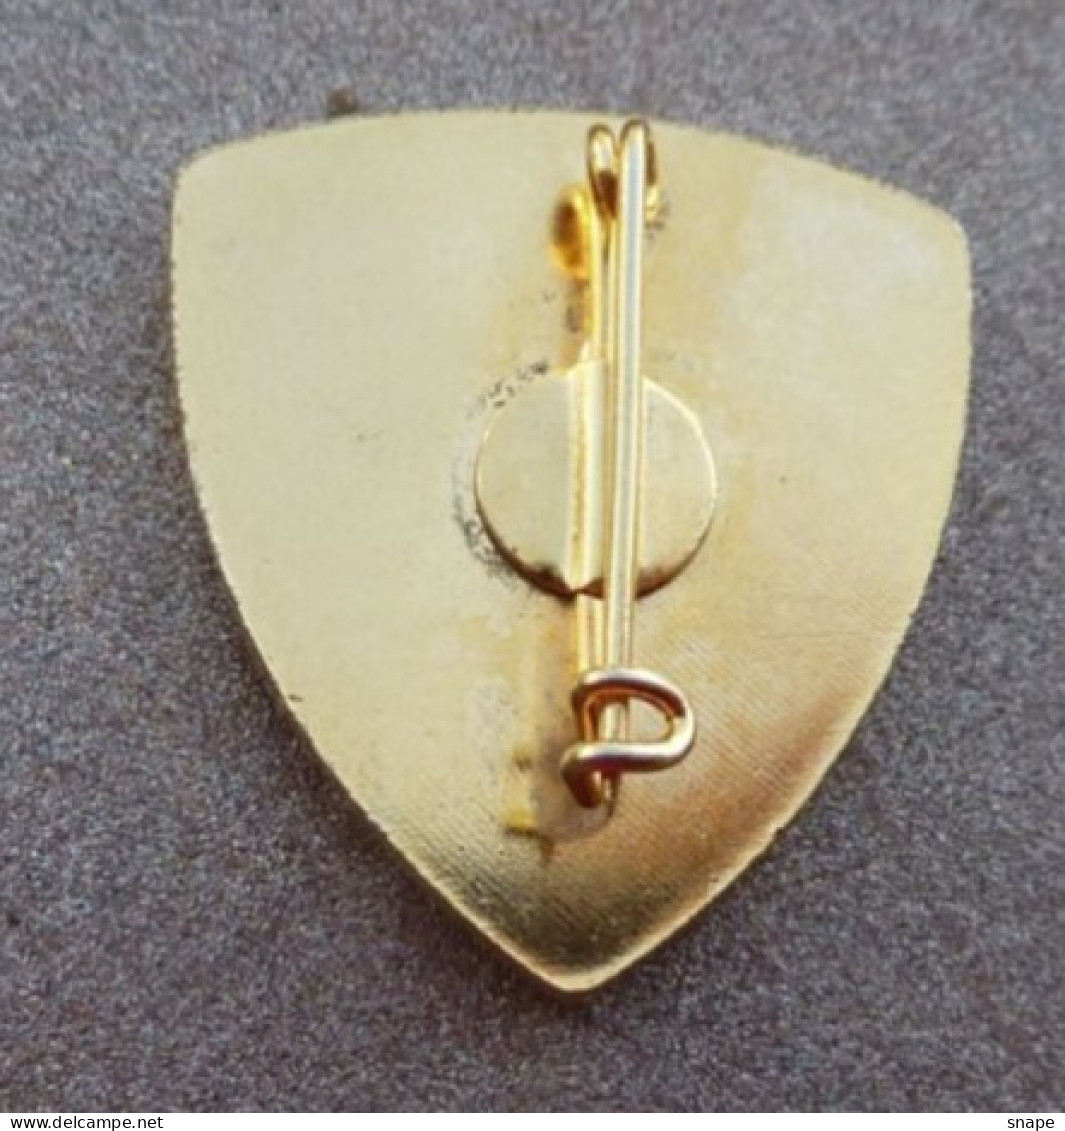 DISTINTIVO Vetrificato A Spilla TELEFONISTA  - Esercito Italiano Incarichi - Italian Army Pinned Badge - Used (286) - Army